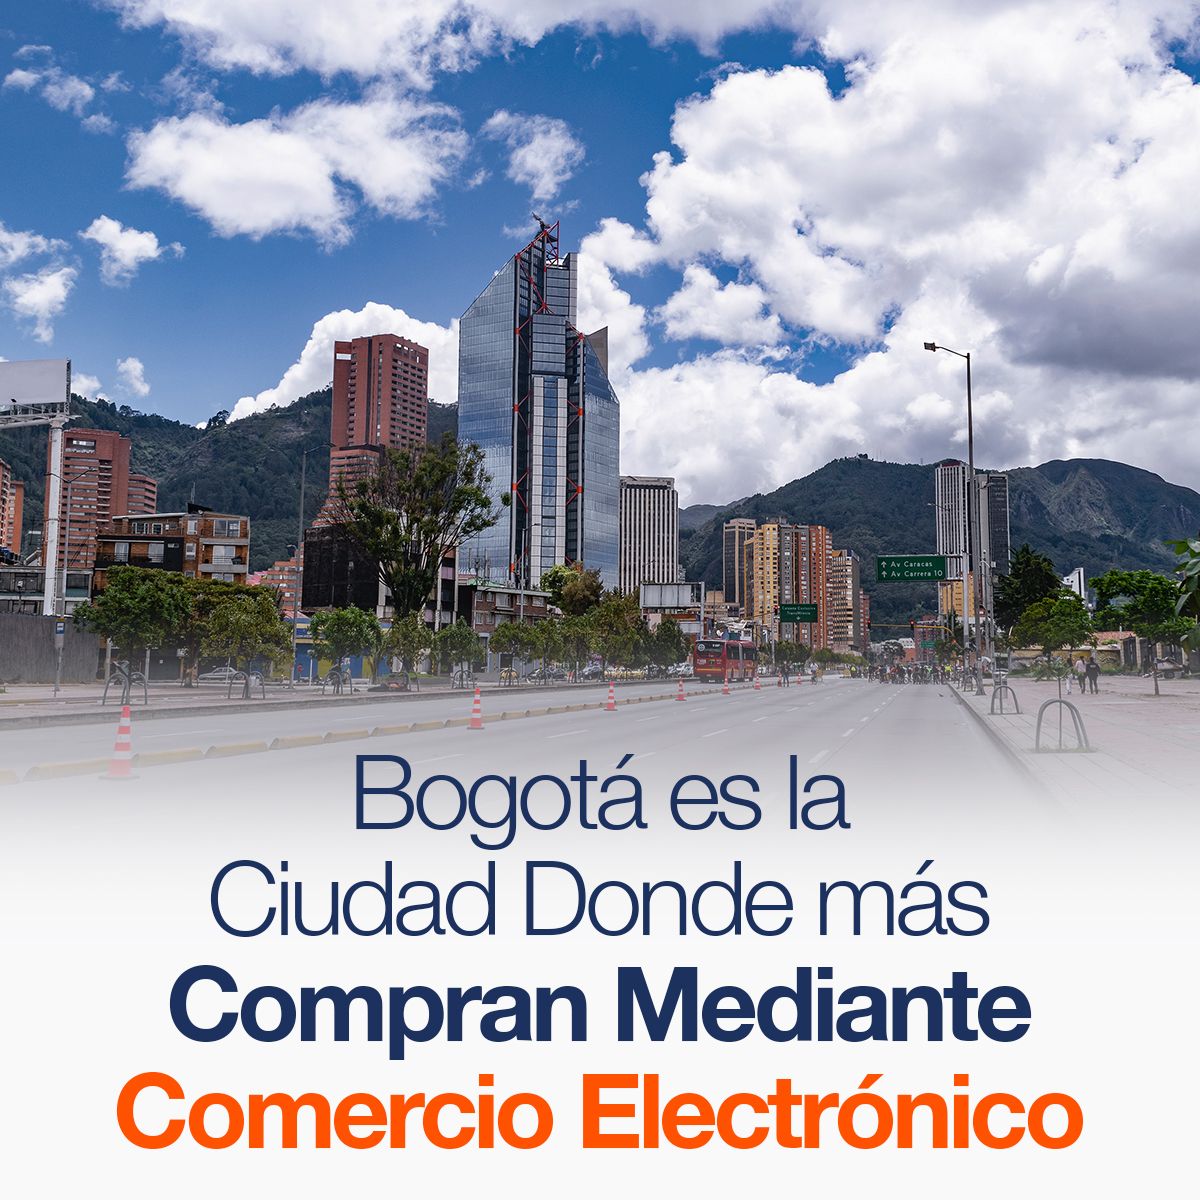 Bogotá es la Ciudad Donde más Compran Mediante Comercio Electrónico